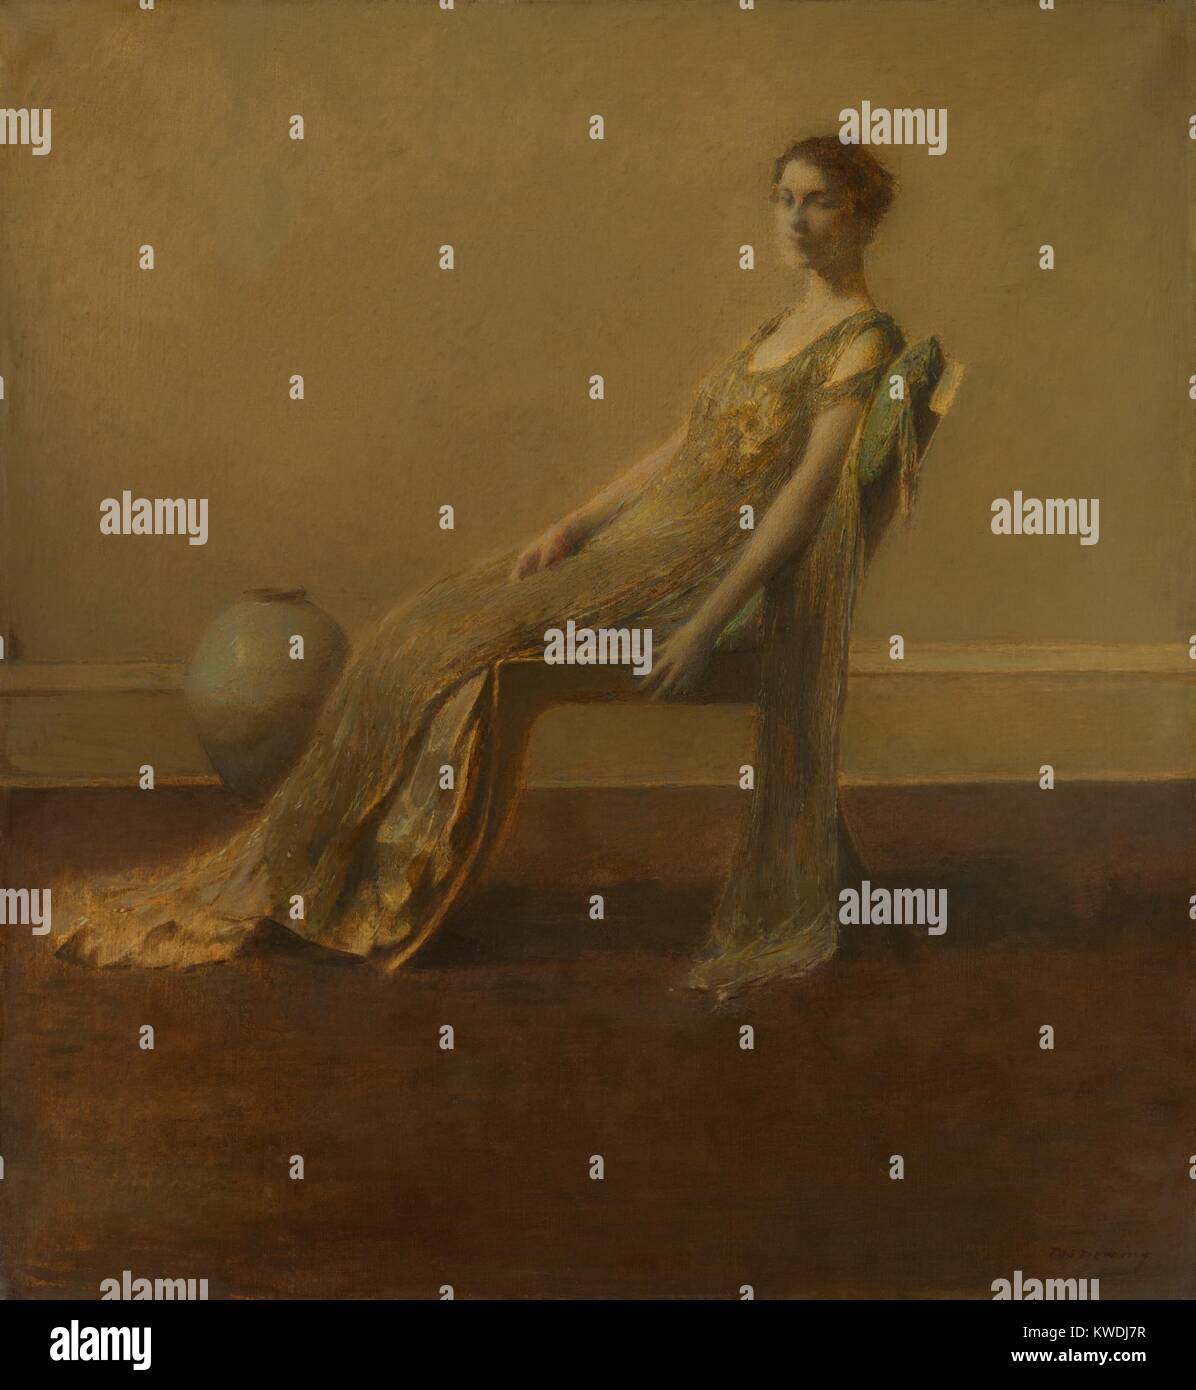 Le vert et l'or, par Thomas Wilmer Dewing, 1917, American peinture, huile sur toile. Un de vous courber les femmes élégamment vêtue assise seule dans un intérieur de rechange décrites dans soft focus avec adresse d'application de la peinture impressionniste (BSLOC 2017 9 5) Banque D'Images